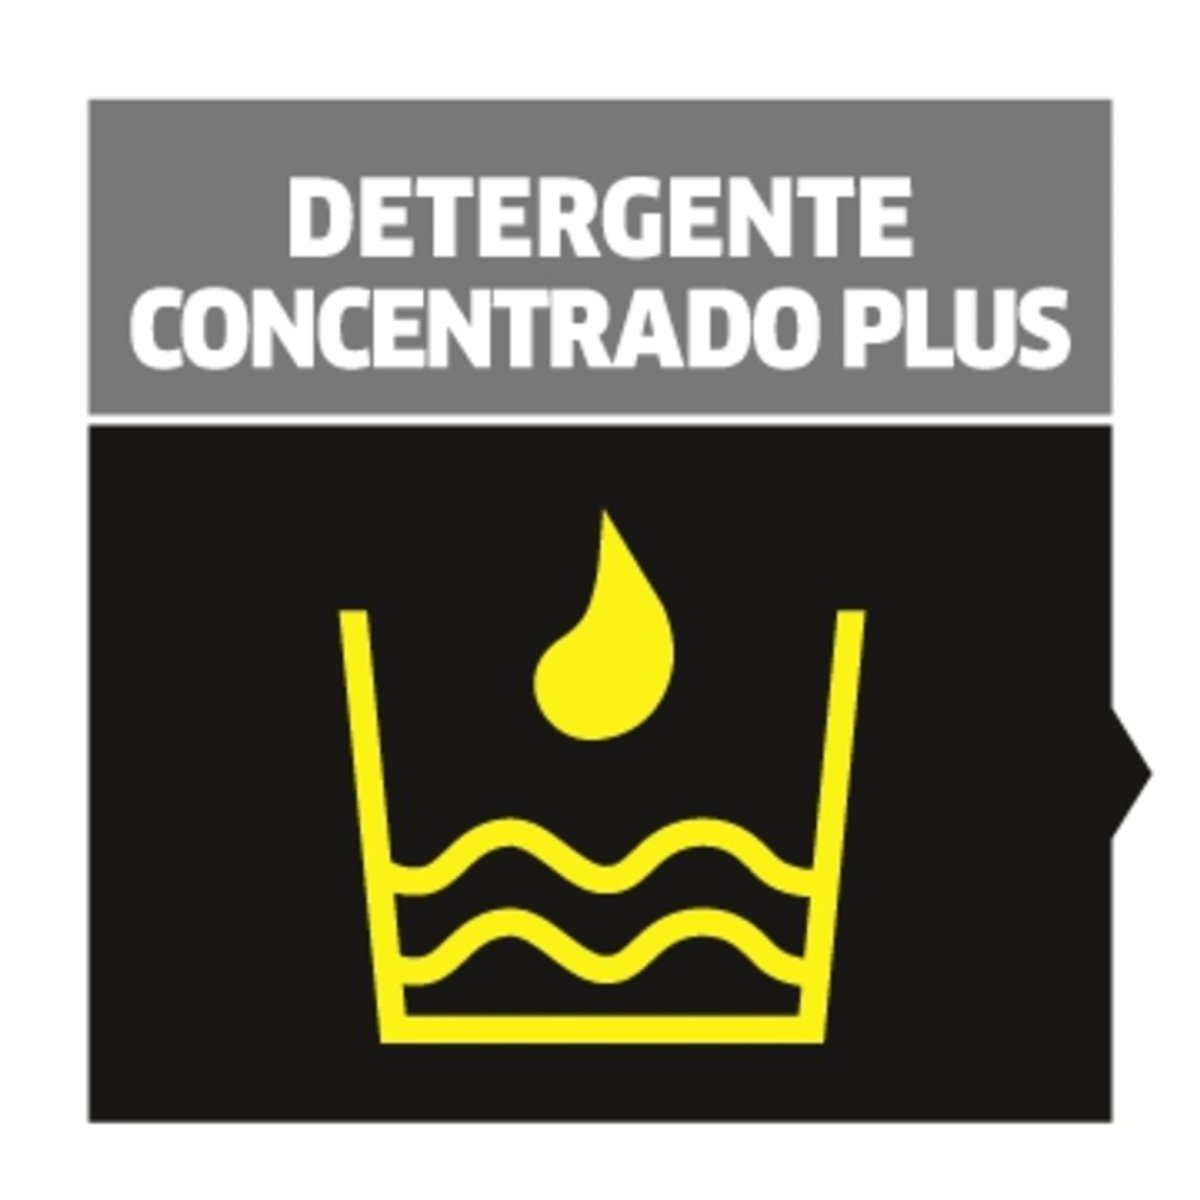 Detergente concentrado para patios rinde 5L - KÄRCHER SHOPACCESORIOS